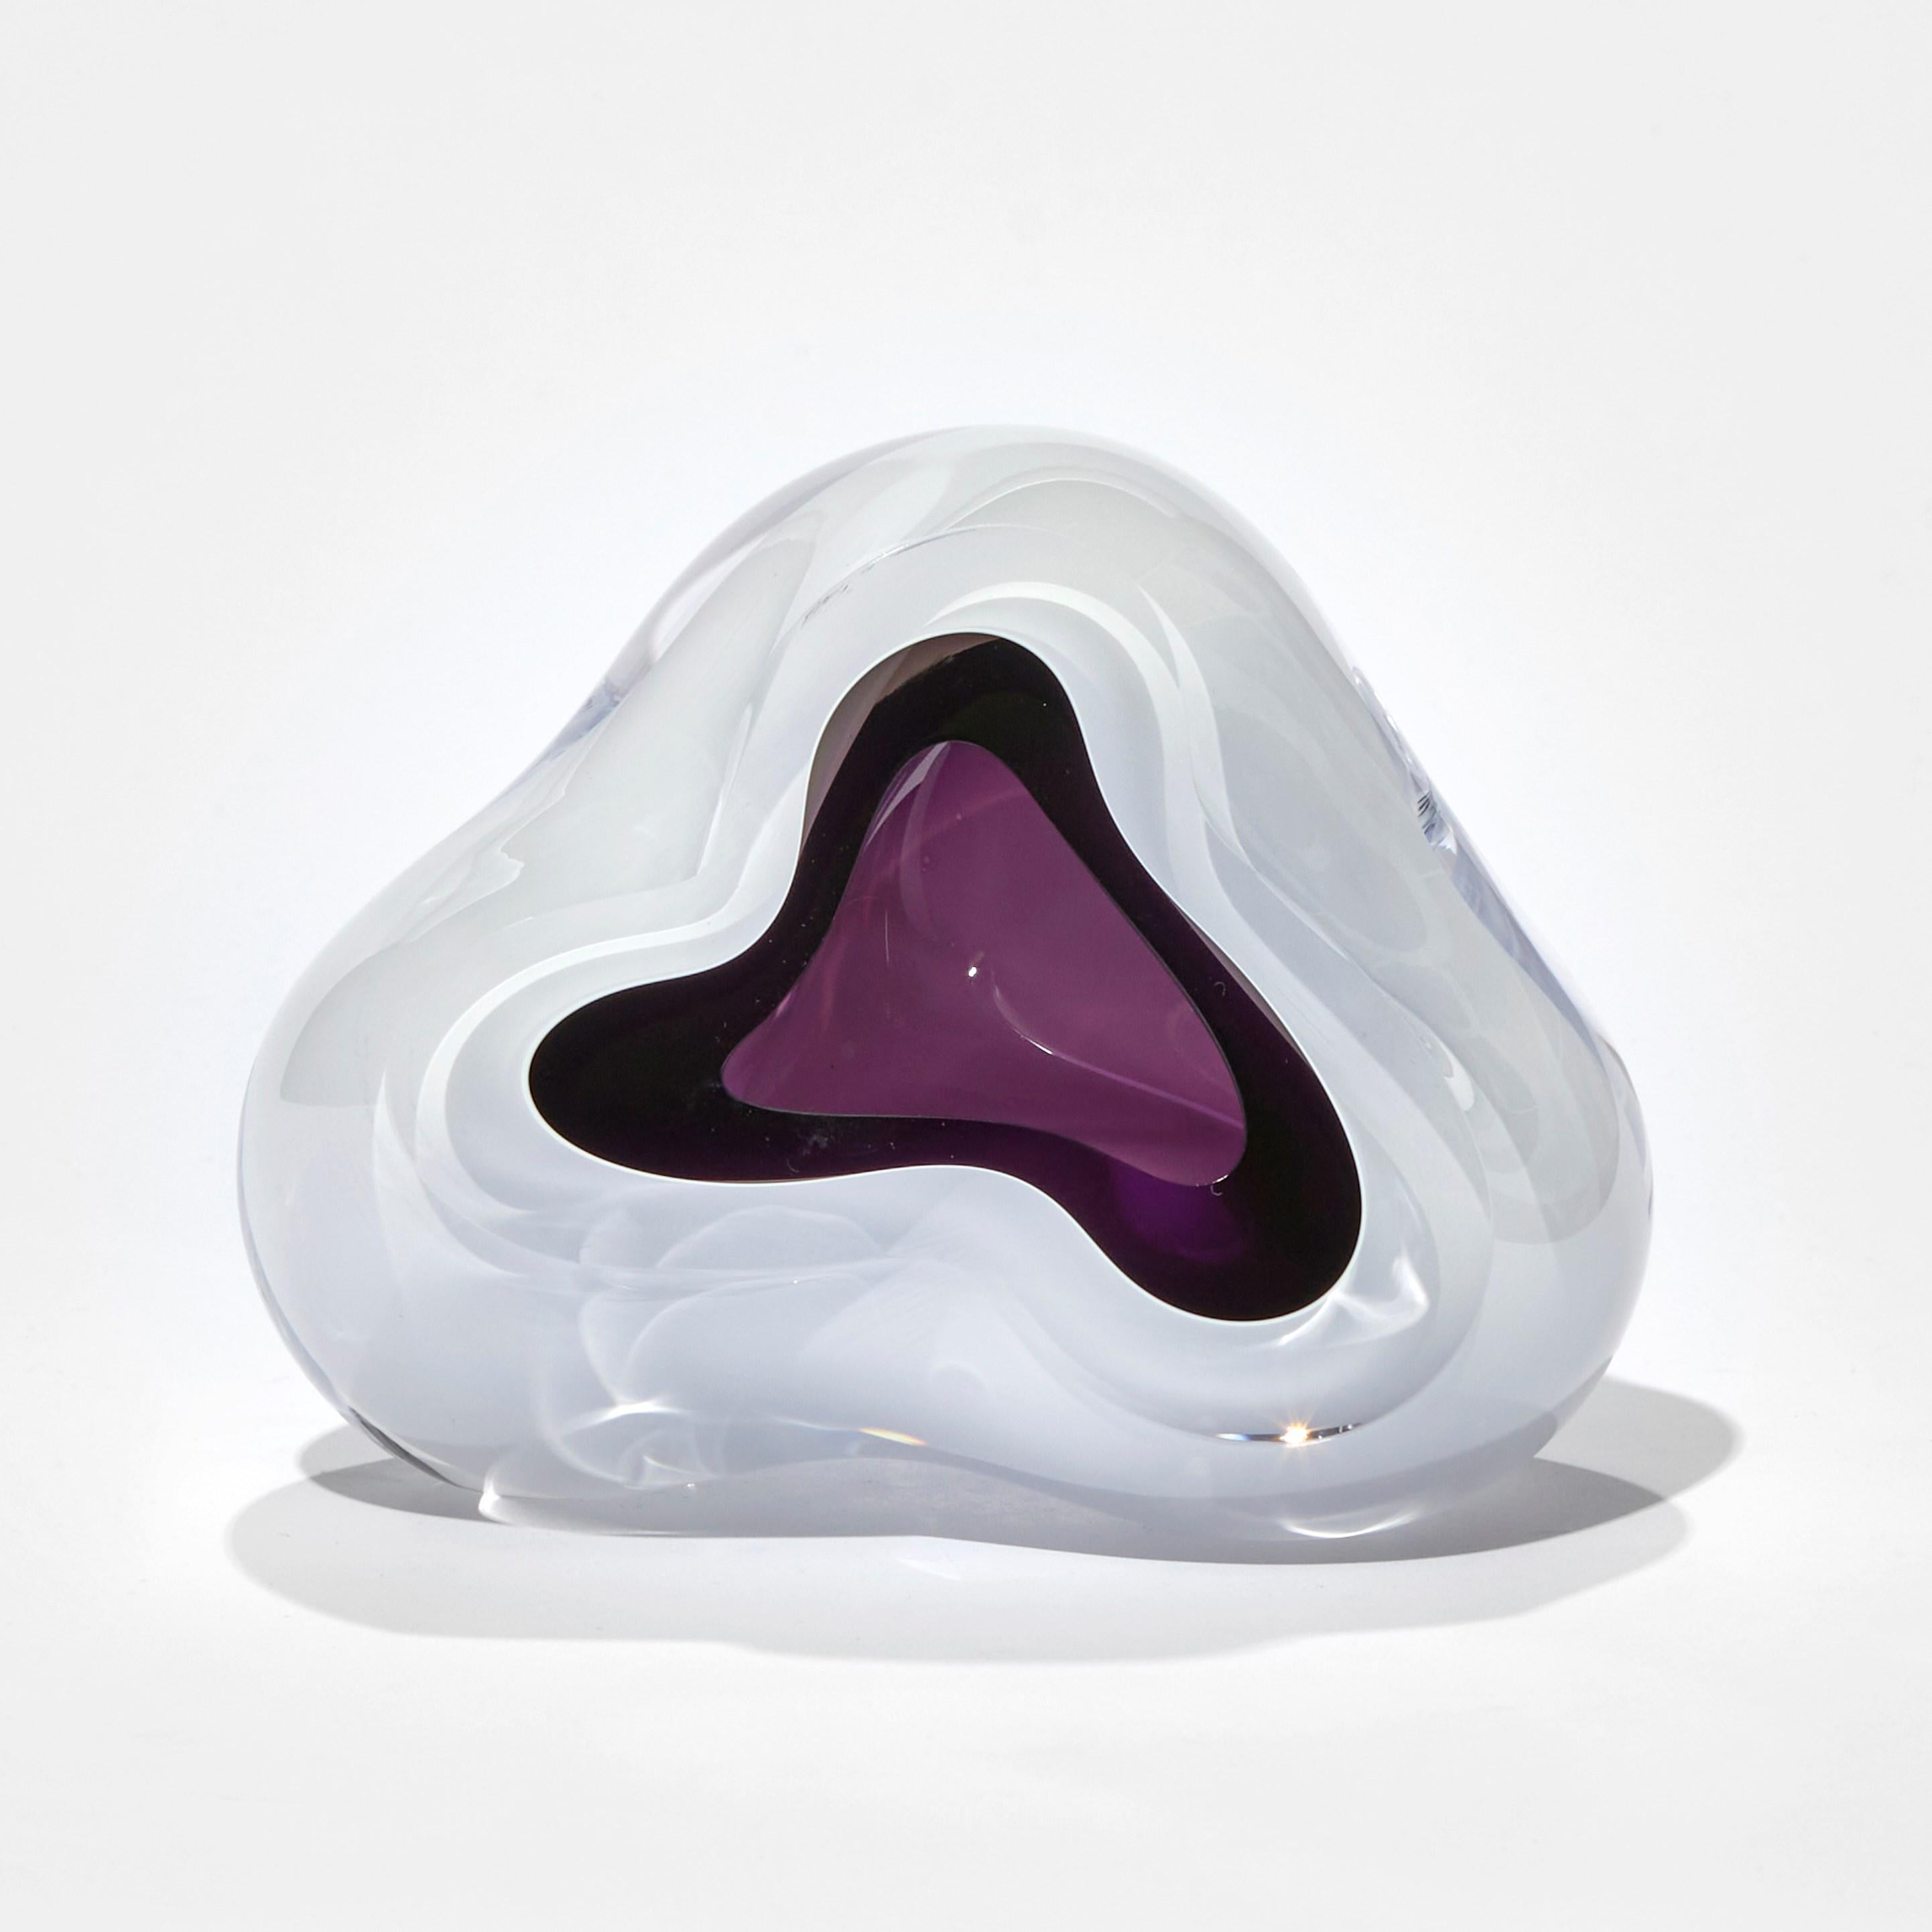 Ice Vug in Purple ist eine einzigartige mundgeblasene Skulptur der britischen Künstlerin Samantha Donaldson. Eine bezaubernde, ätherische Skulptur mit einem gletscherweißen Äußeren und einem reichen, violetten, höhlenartigen Inneren. Donaldson lässt